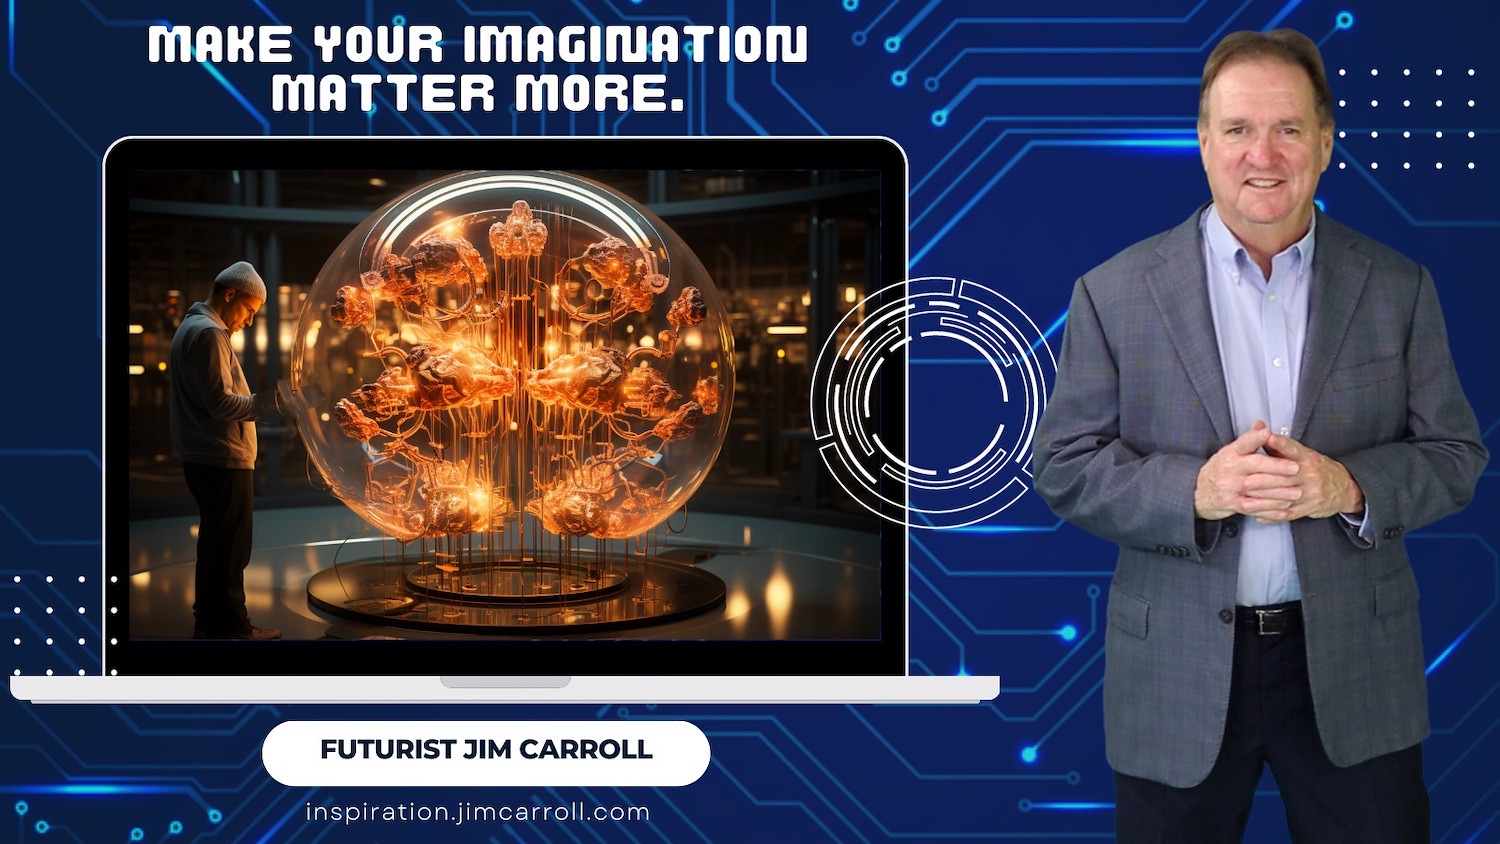 Imaginati"Make your imagination matter more." - Futurist Jim CarrollonMore - 1